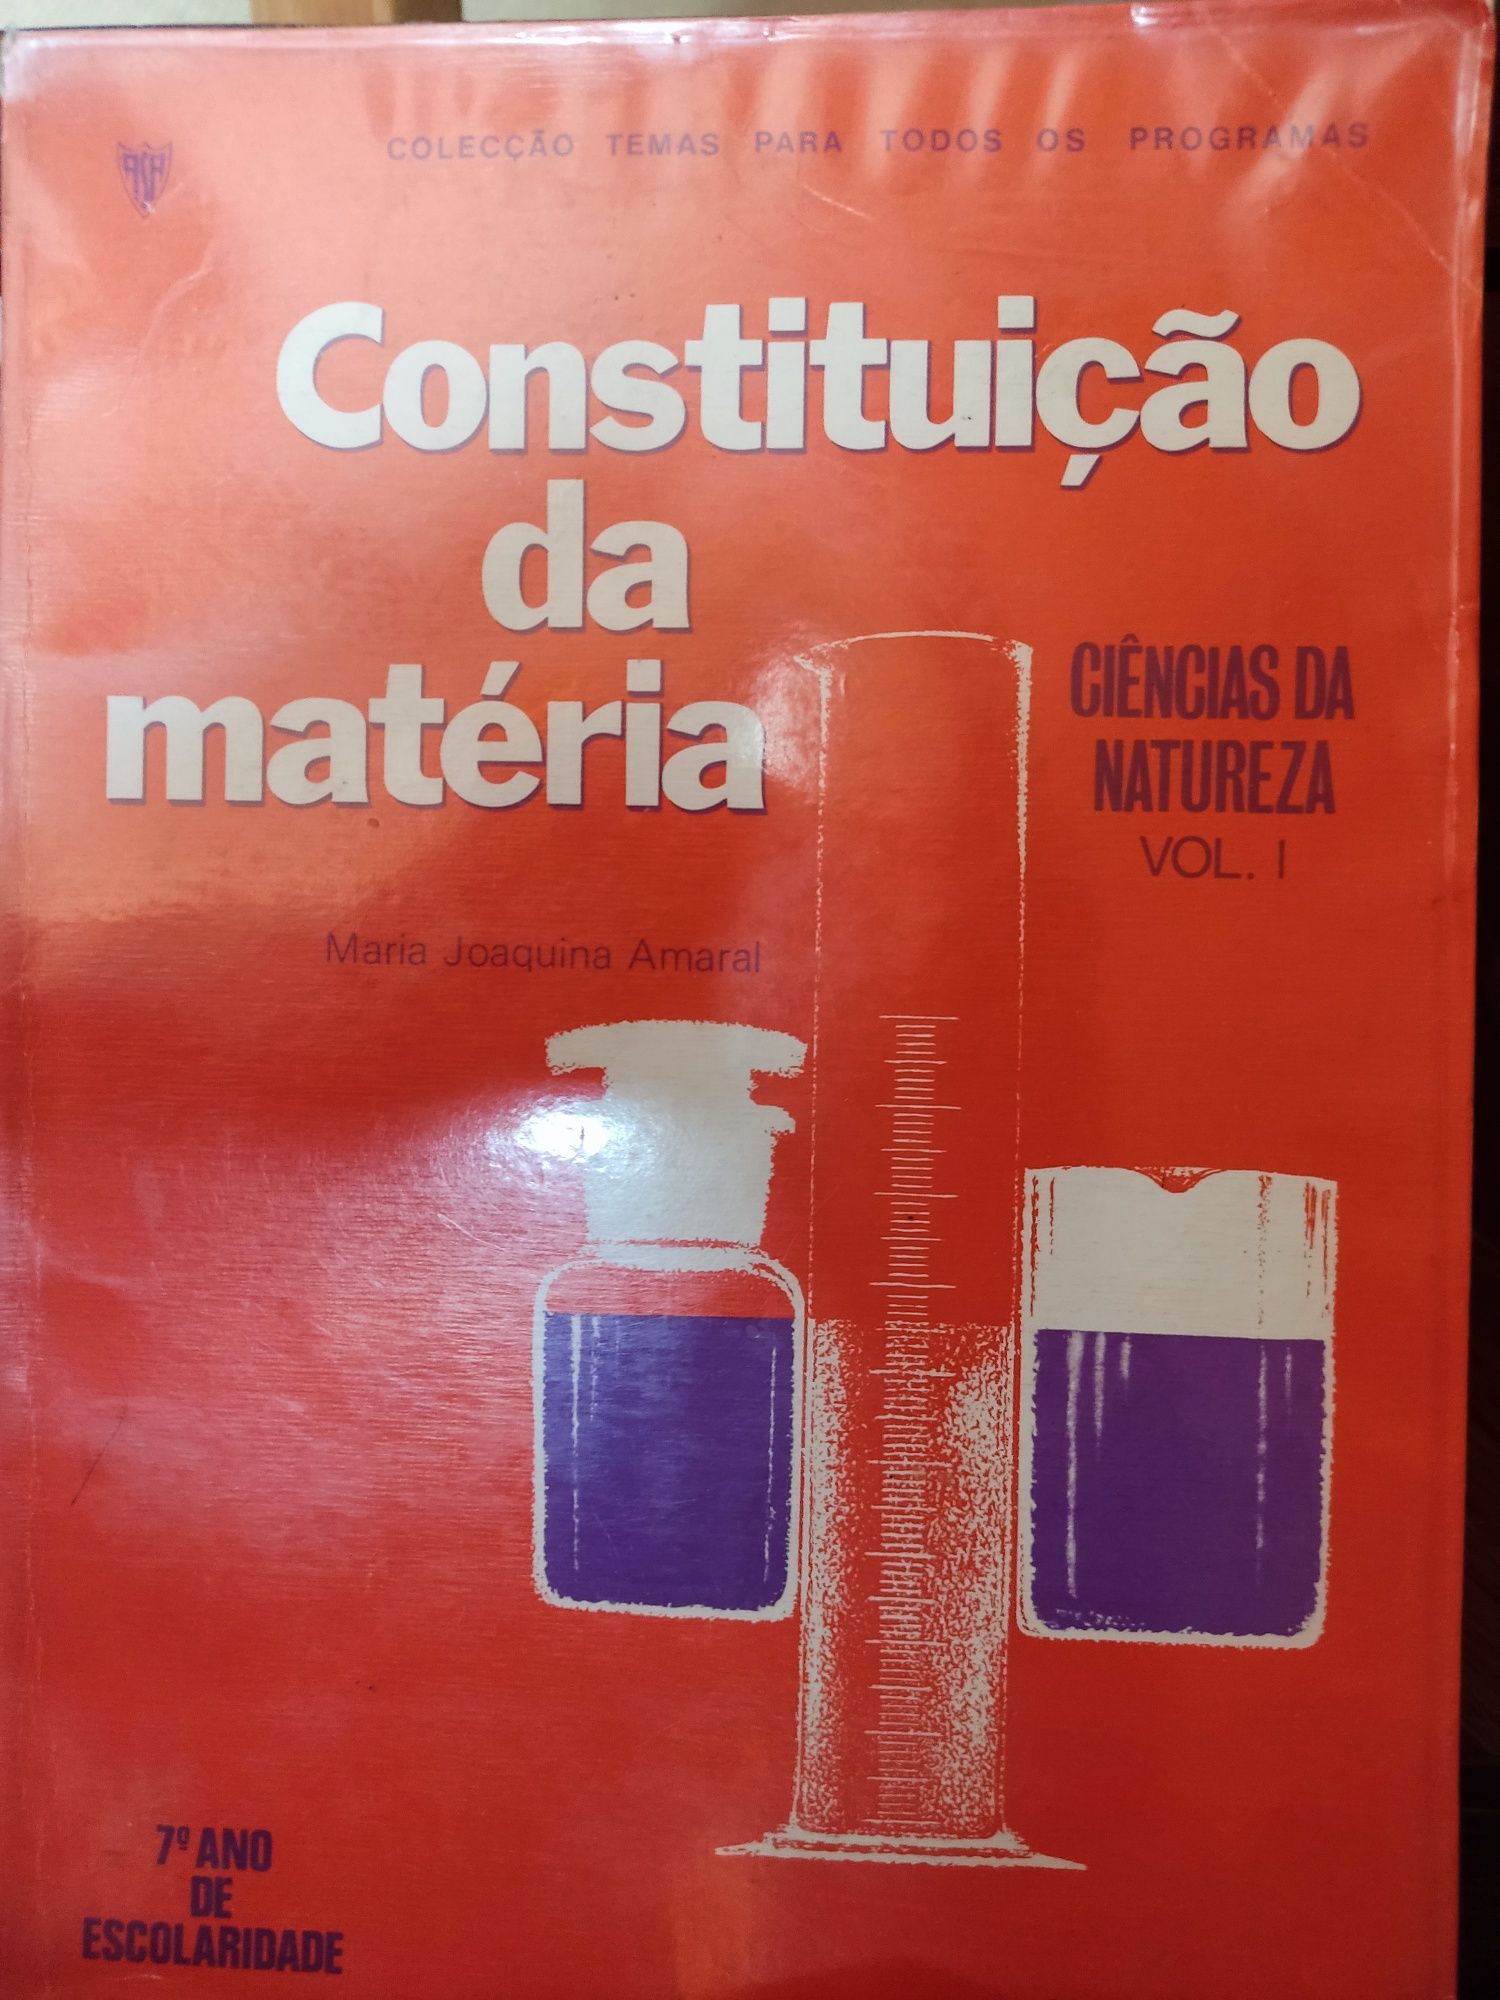 Livro Constituição da Matéria, antigo, do 7 ano em 1978